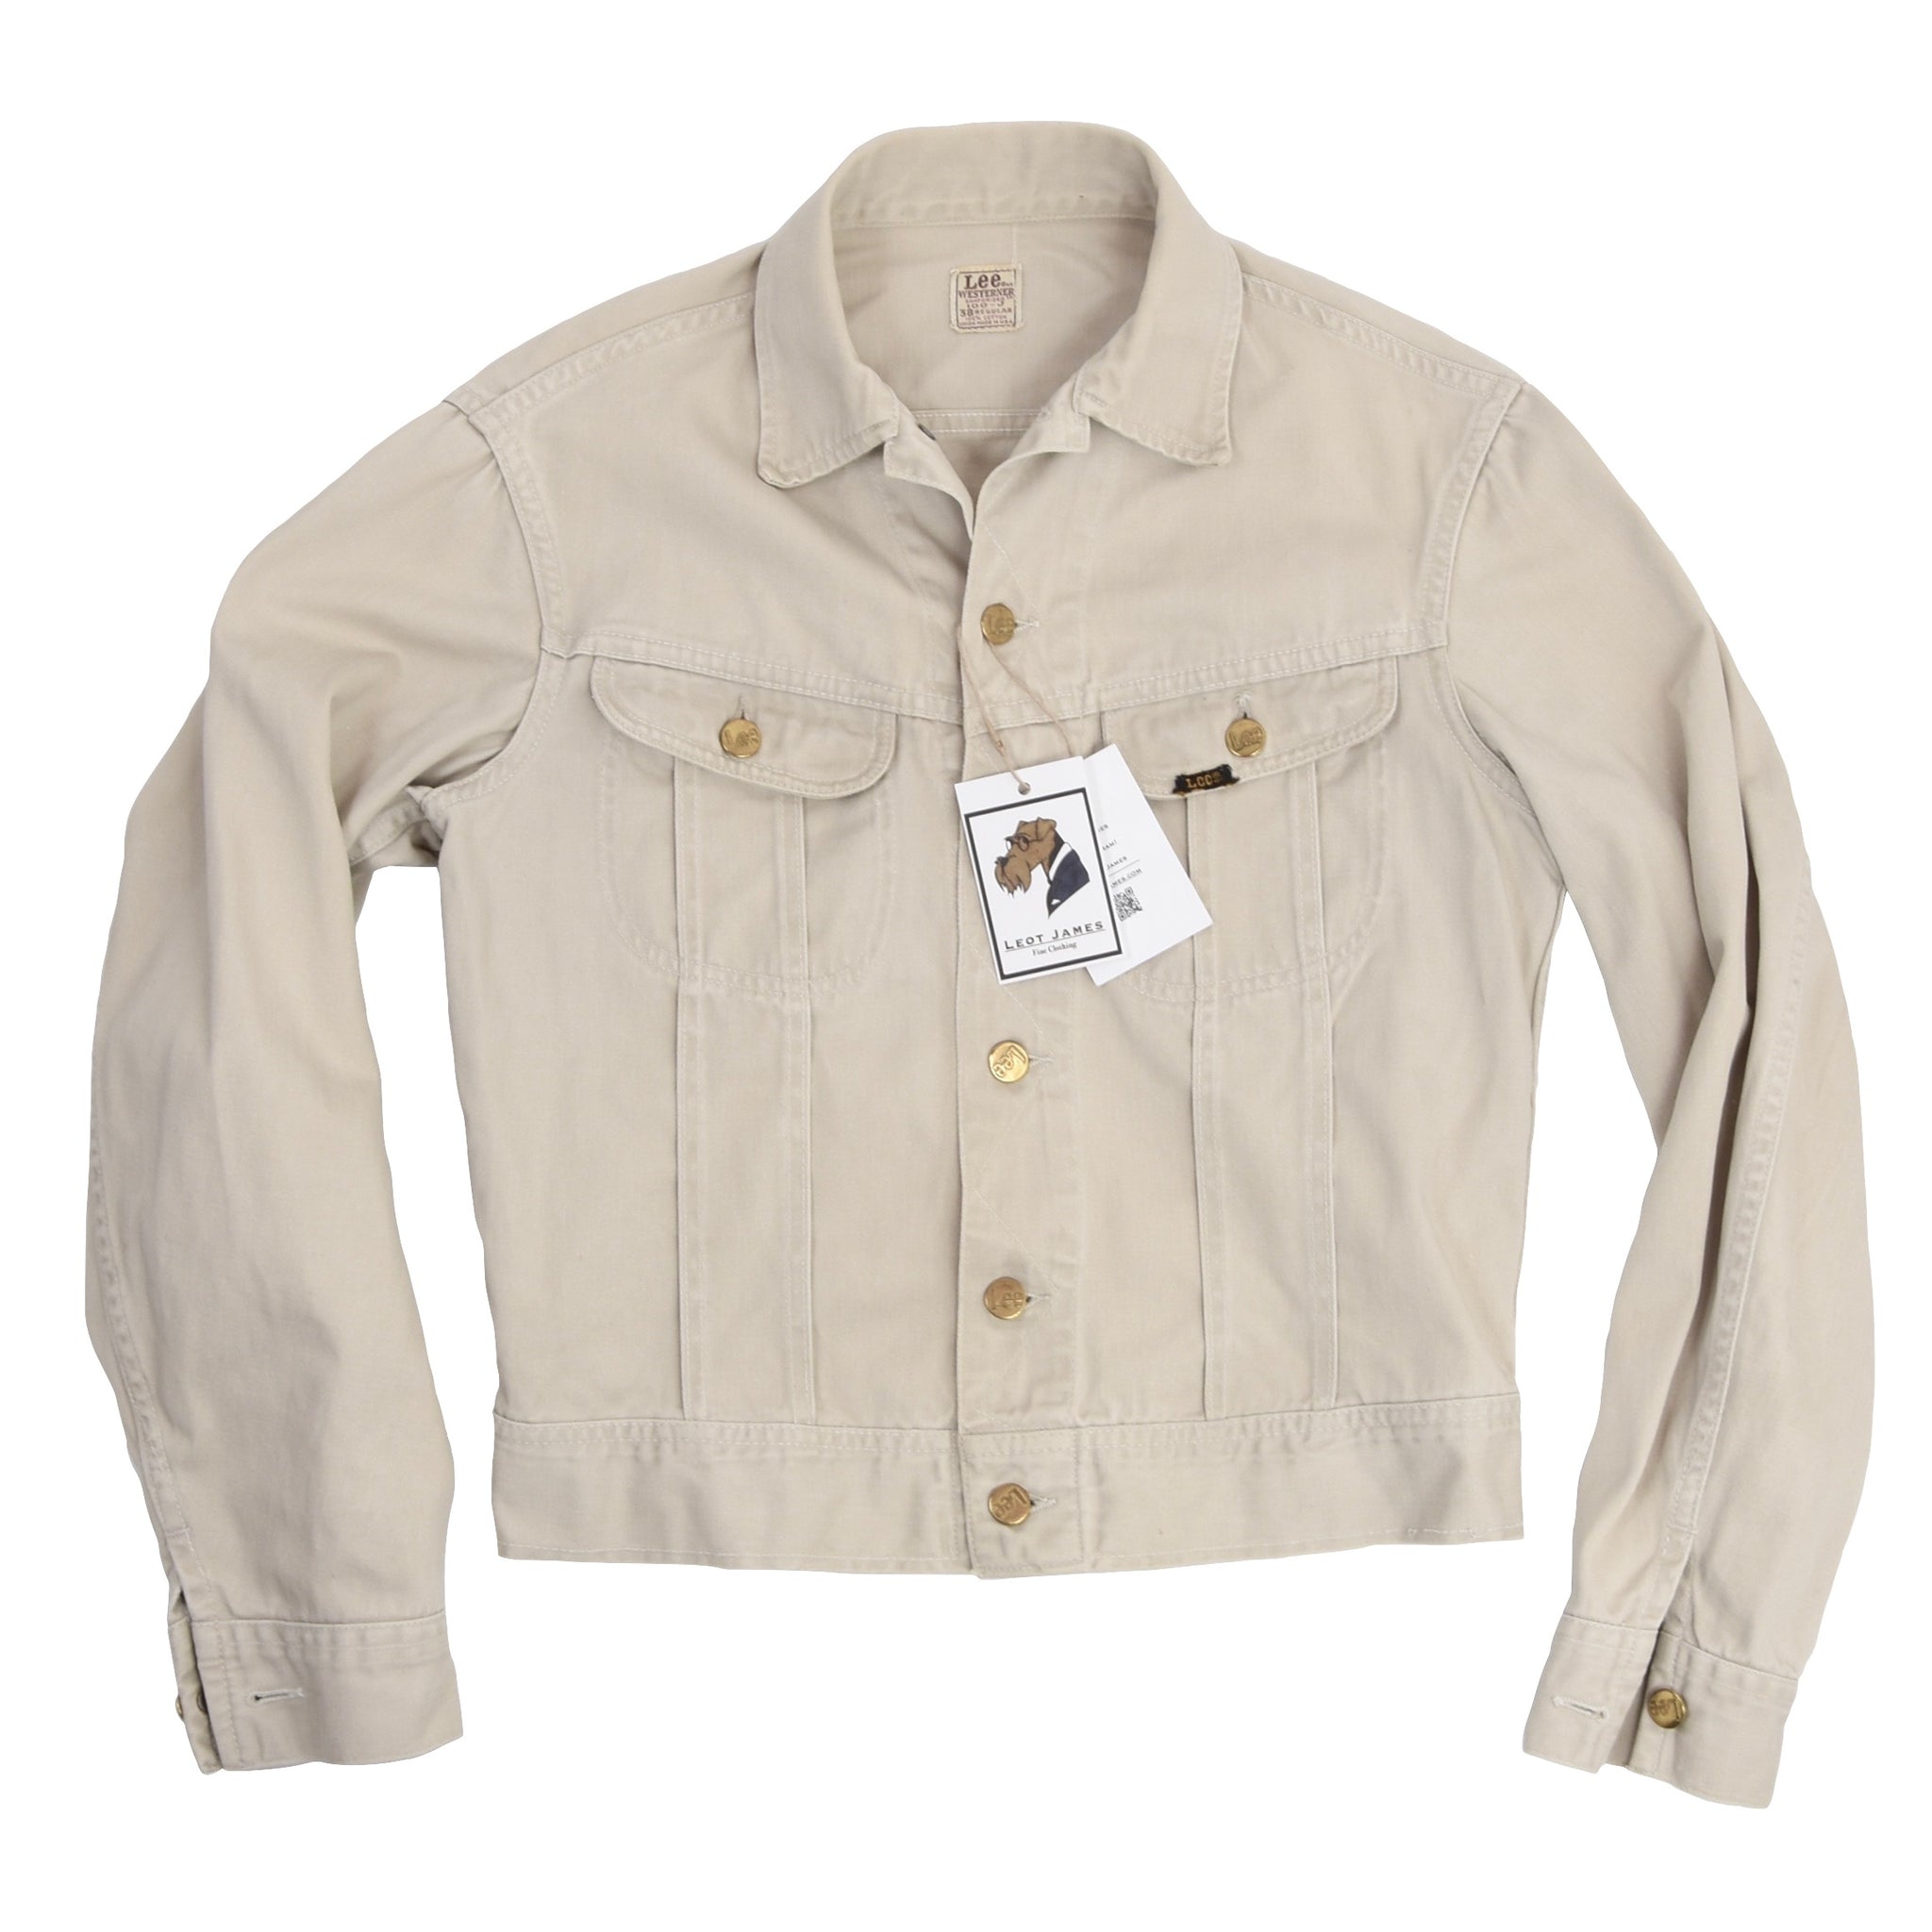 1960s Lee Westerner 100-J Denim Jacket Size 38R - Beige/Off-White